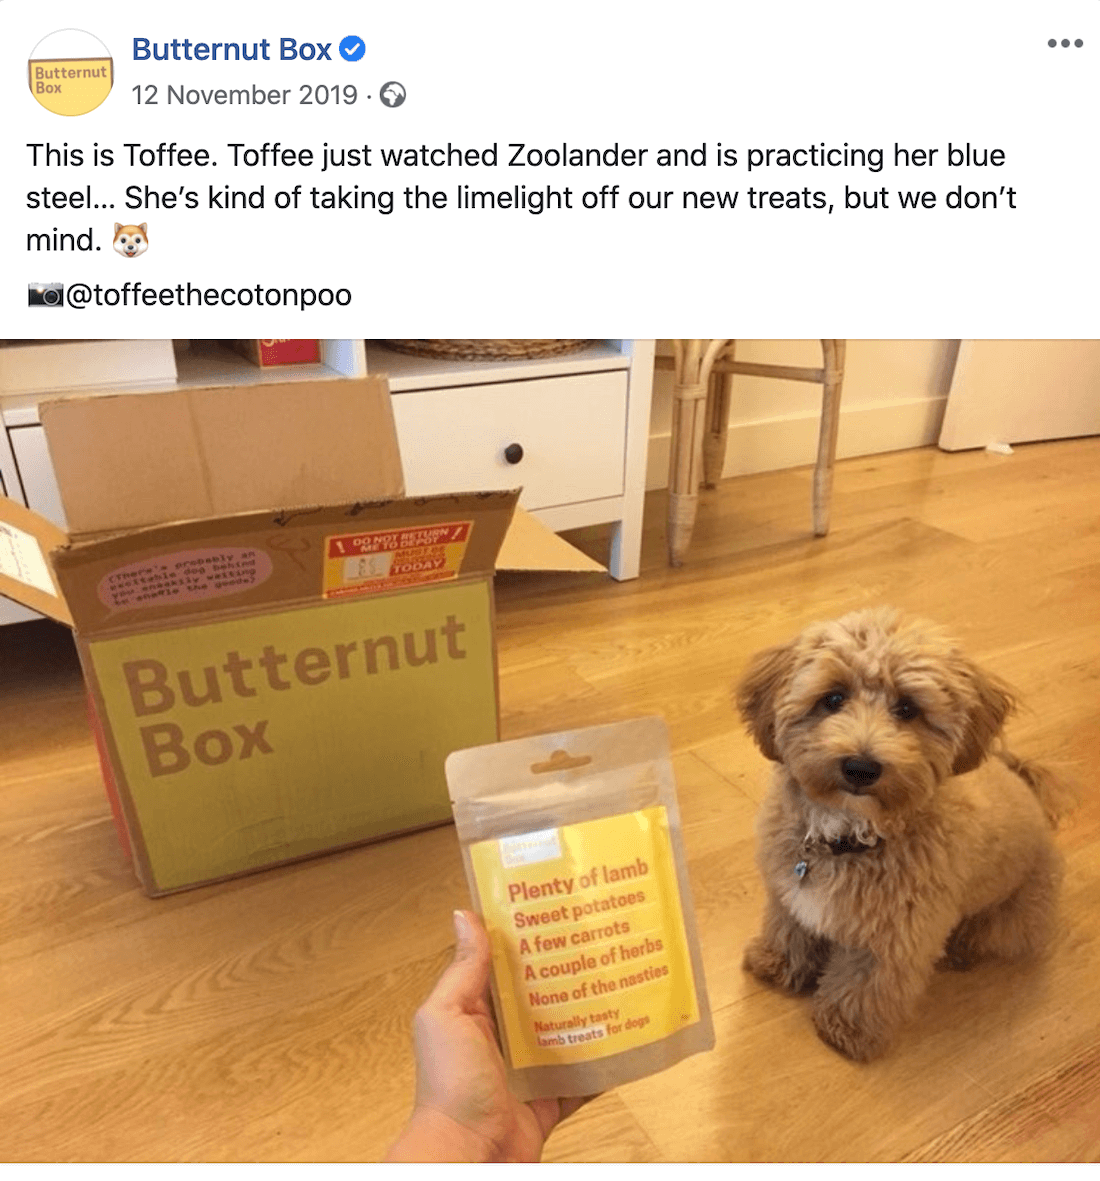 Butternut Box holiday advertising social media